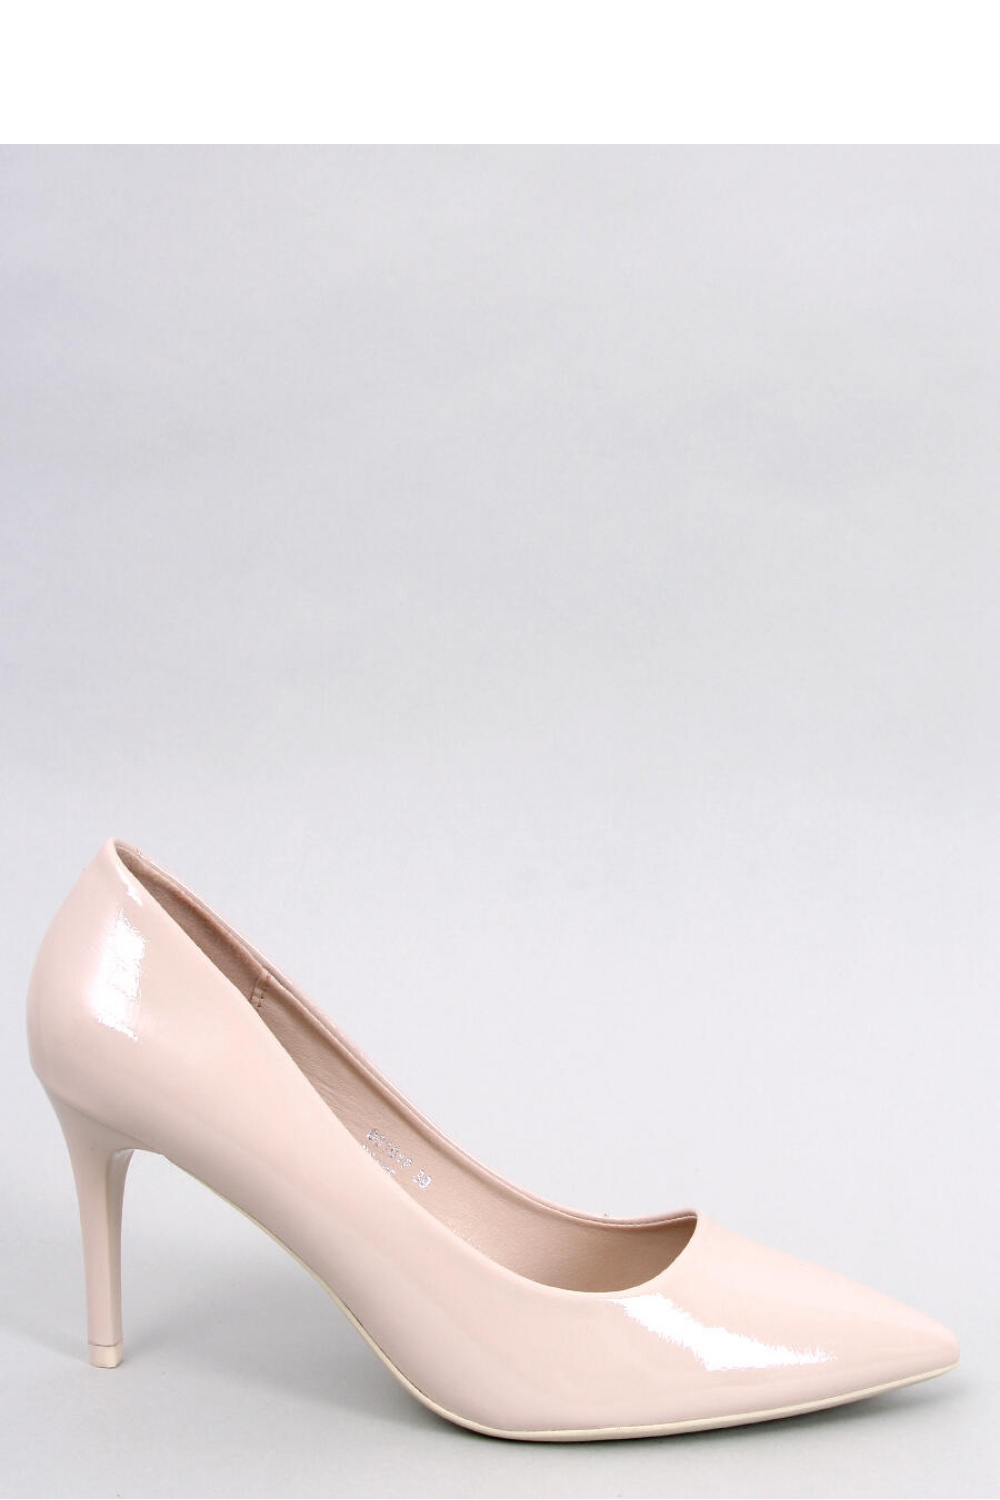 High heels model 181929 Inello